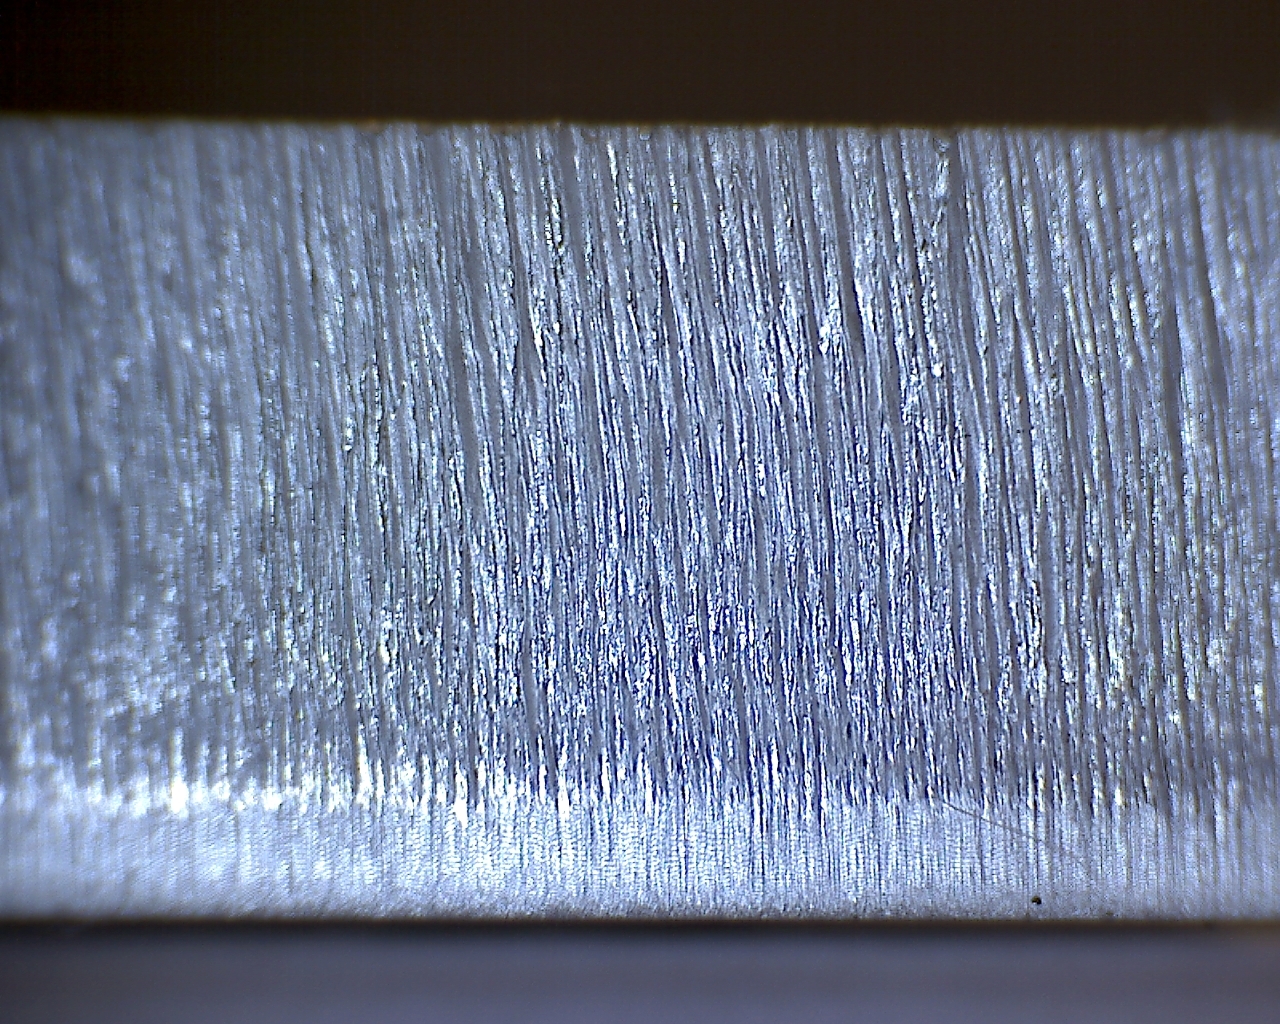 Hier ein Schnittbild von 12mm Alu mit Stickstoff geschnitten